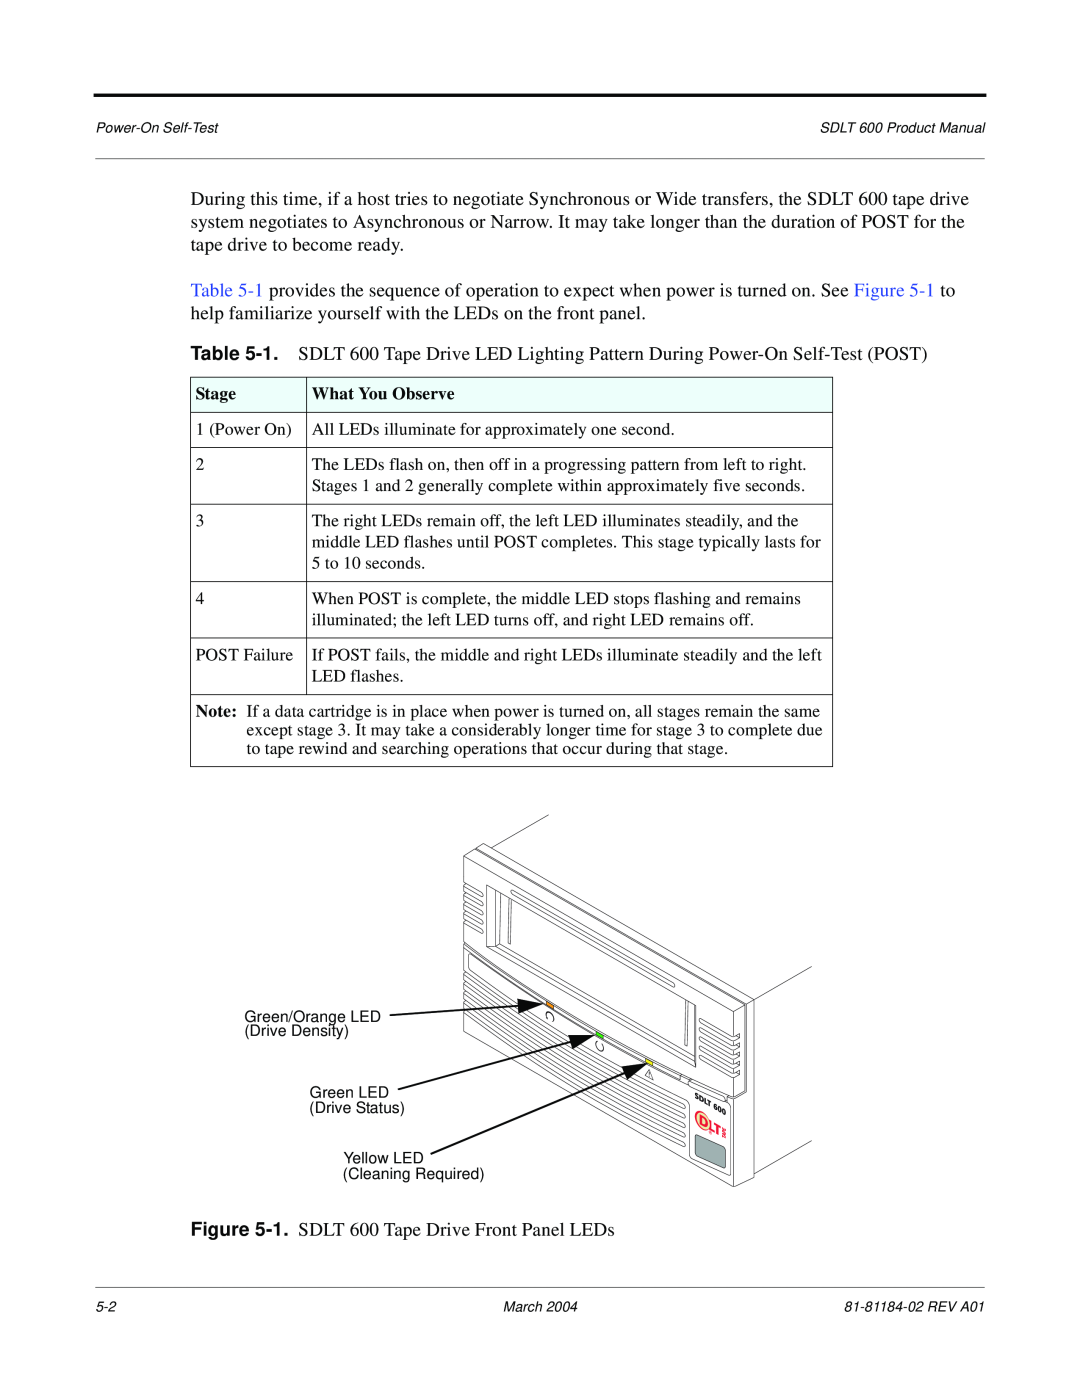 Tandberg Data manual 1. SDLT 600 Tape Drive Front Panel LEDs 